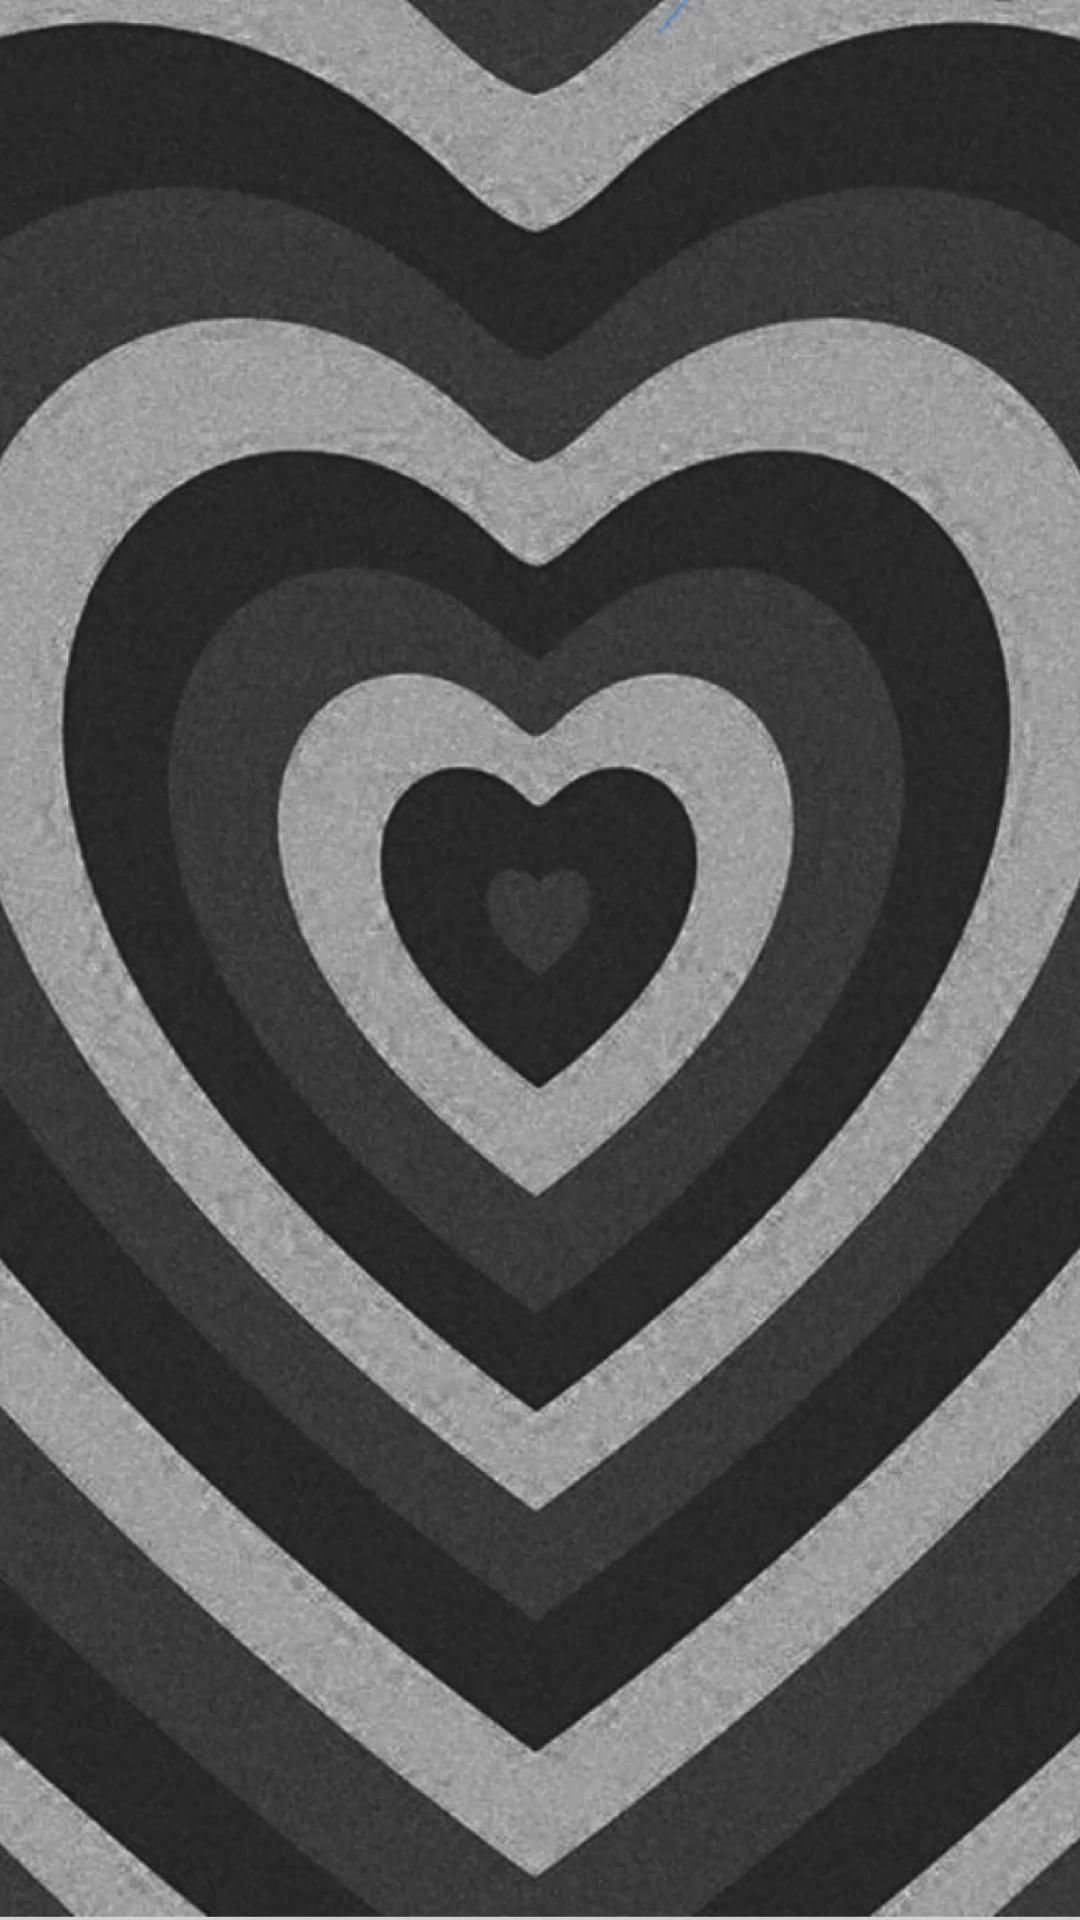 Dark Heart IPhone Wallpaper  IPhone Wallpapers  iPhone Wallpapers